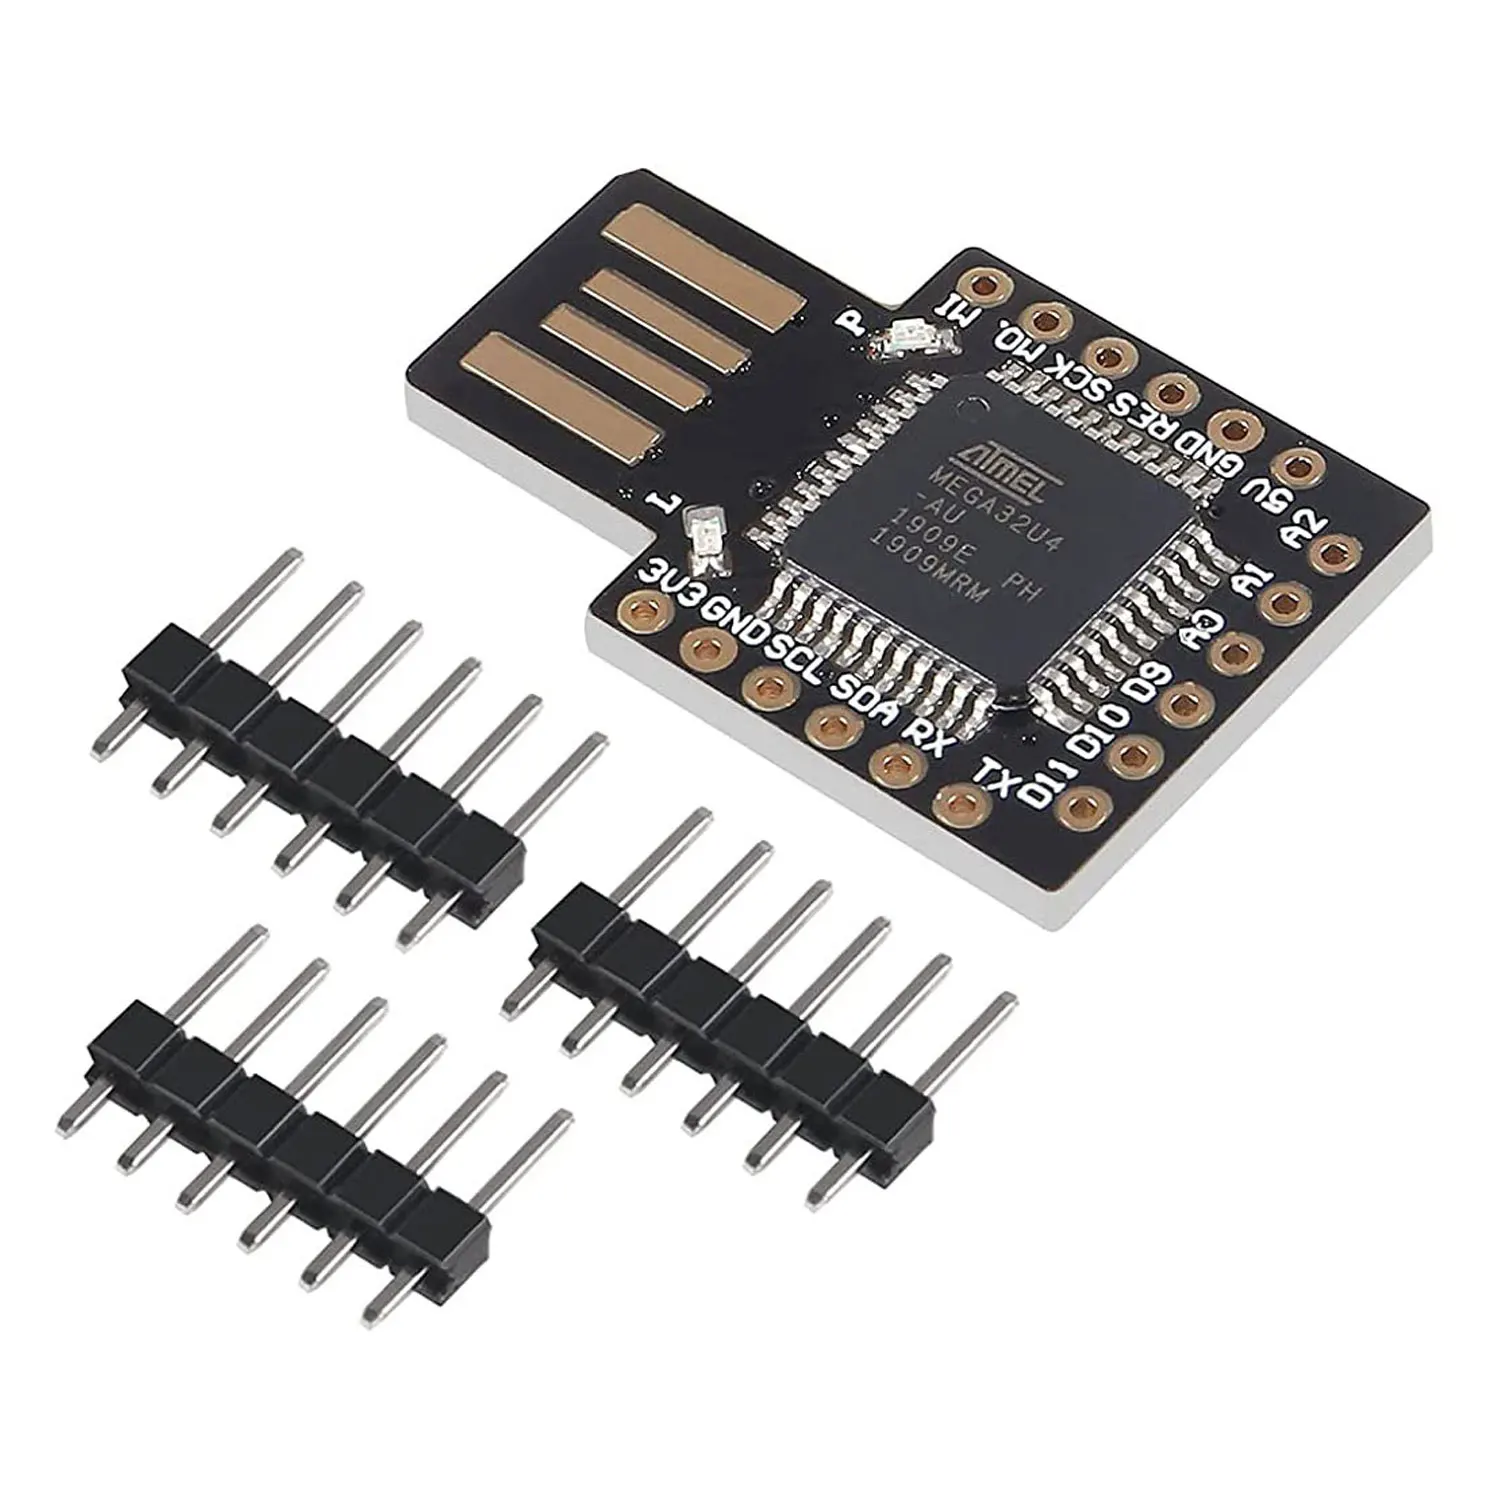 

For Beetle Virtual Keyboard USB Pro Micro Atmega32U4-AU Module Mini Development Expansion Board for Arduino Leonardo R3 DC 5V I2